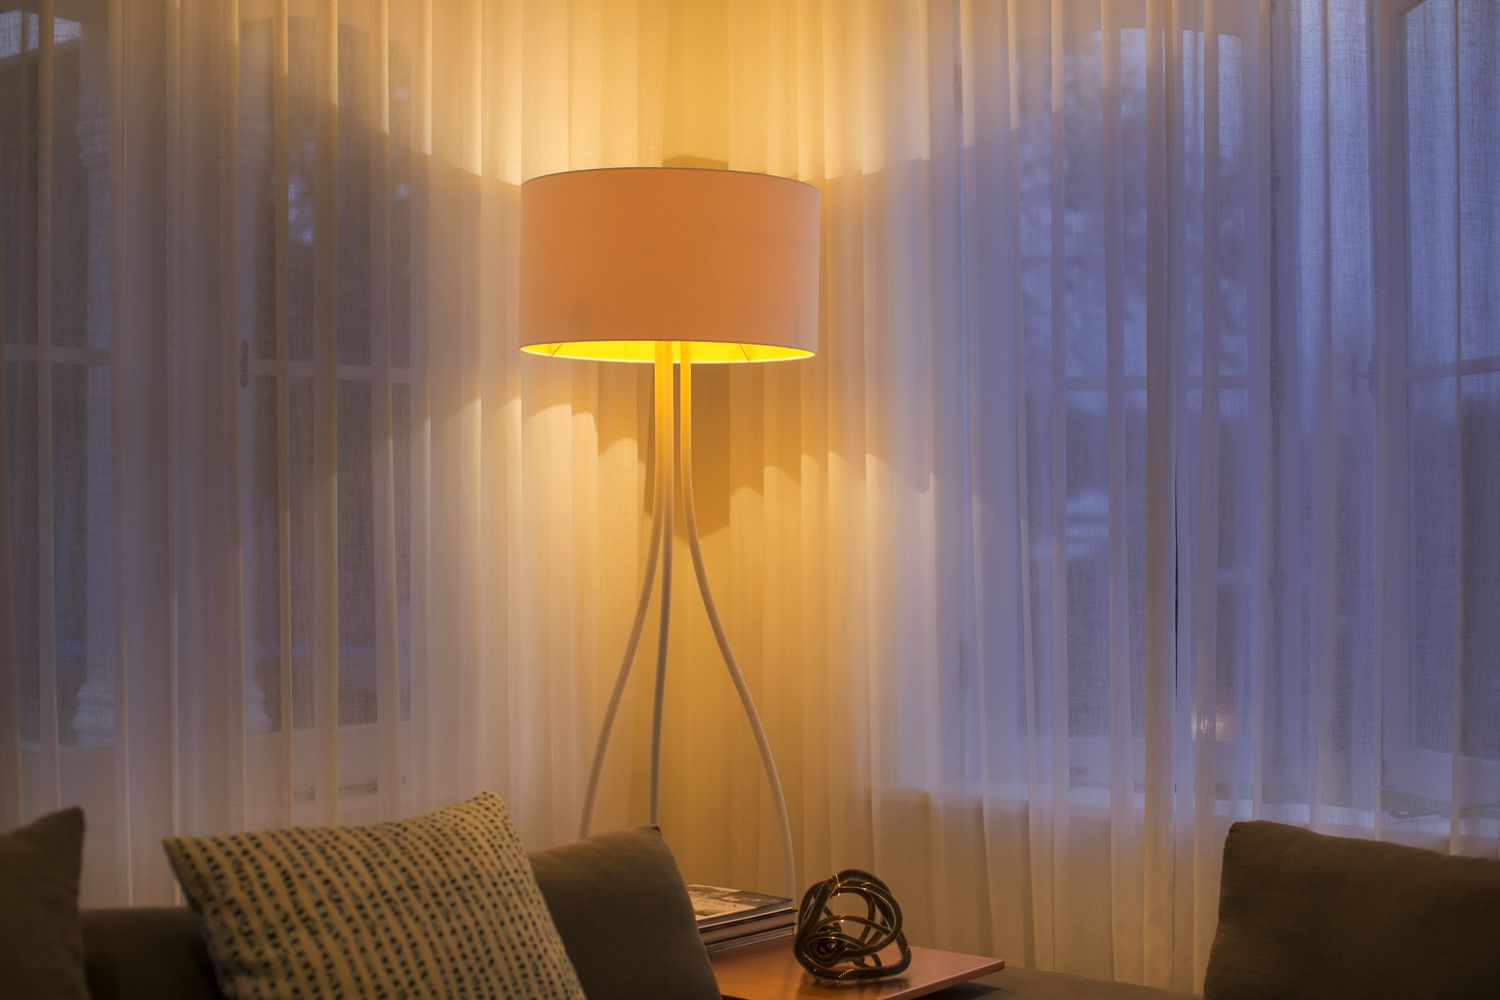 Lâmpada de assoalho iluminada na janela com cortinas transparentes